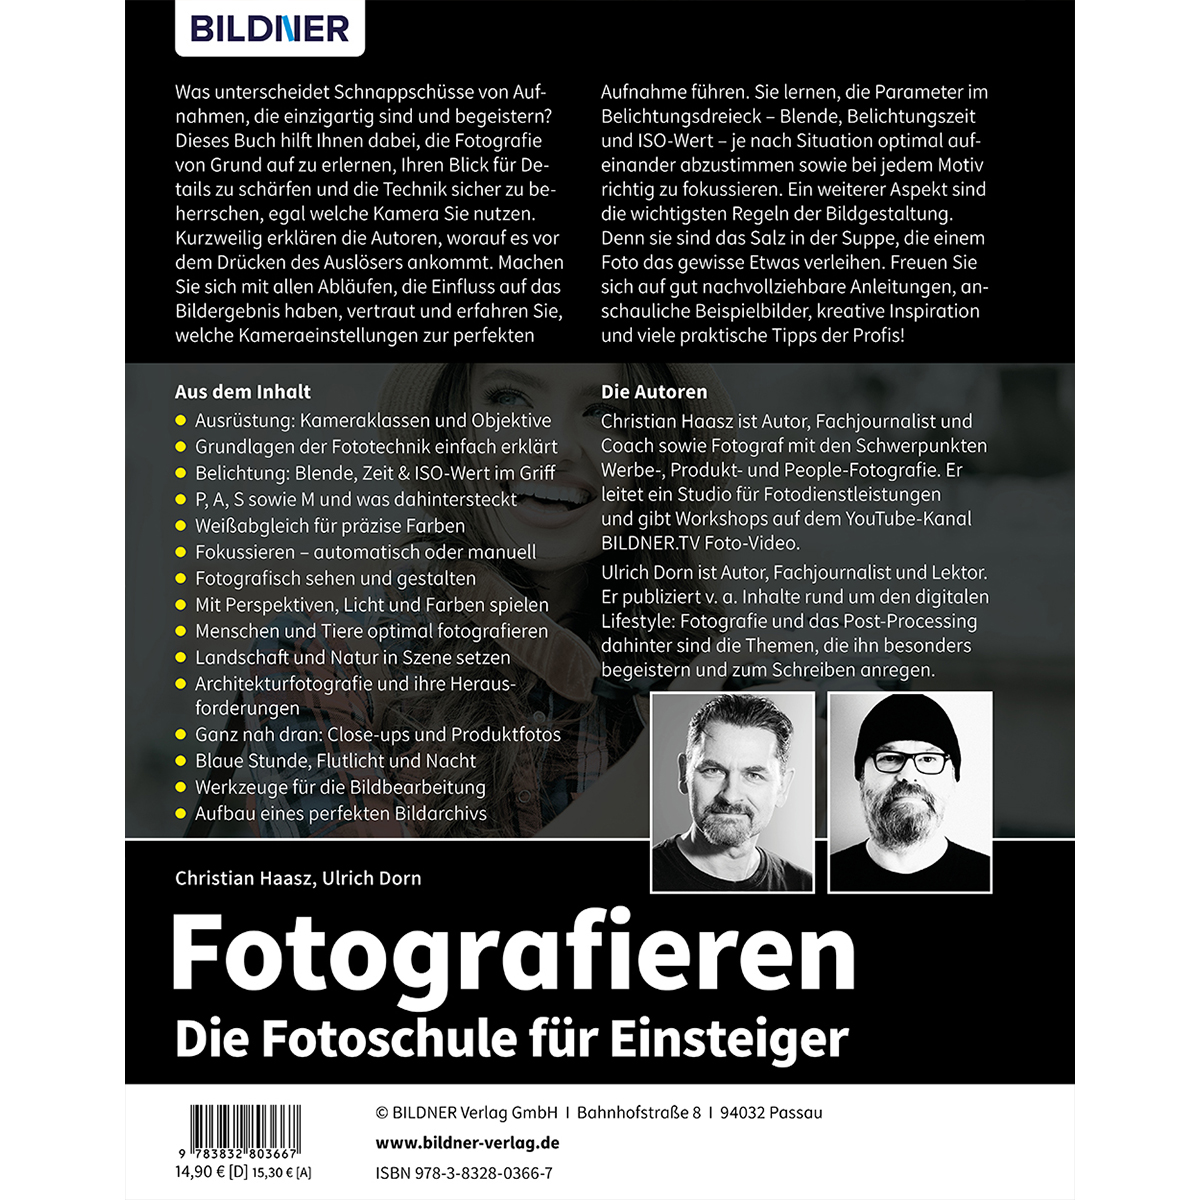 Fotografieren - für Einsteiger Fotoschule Die